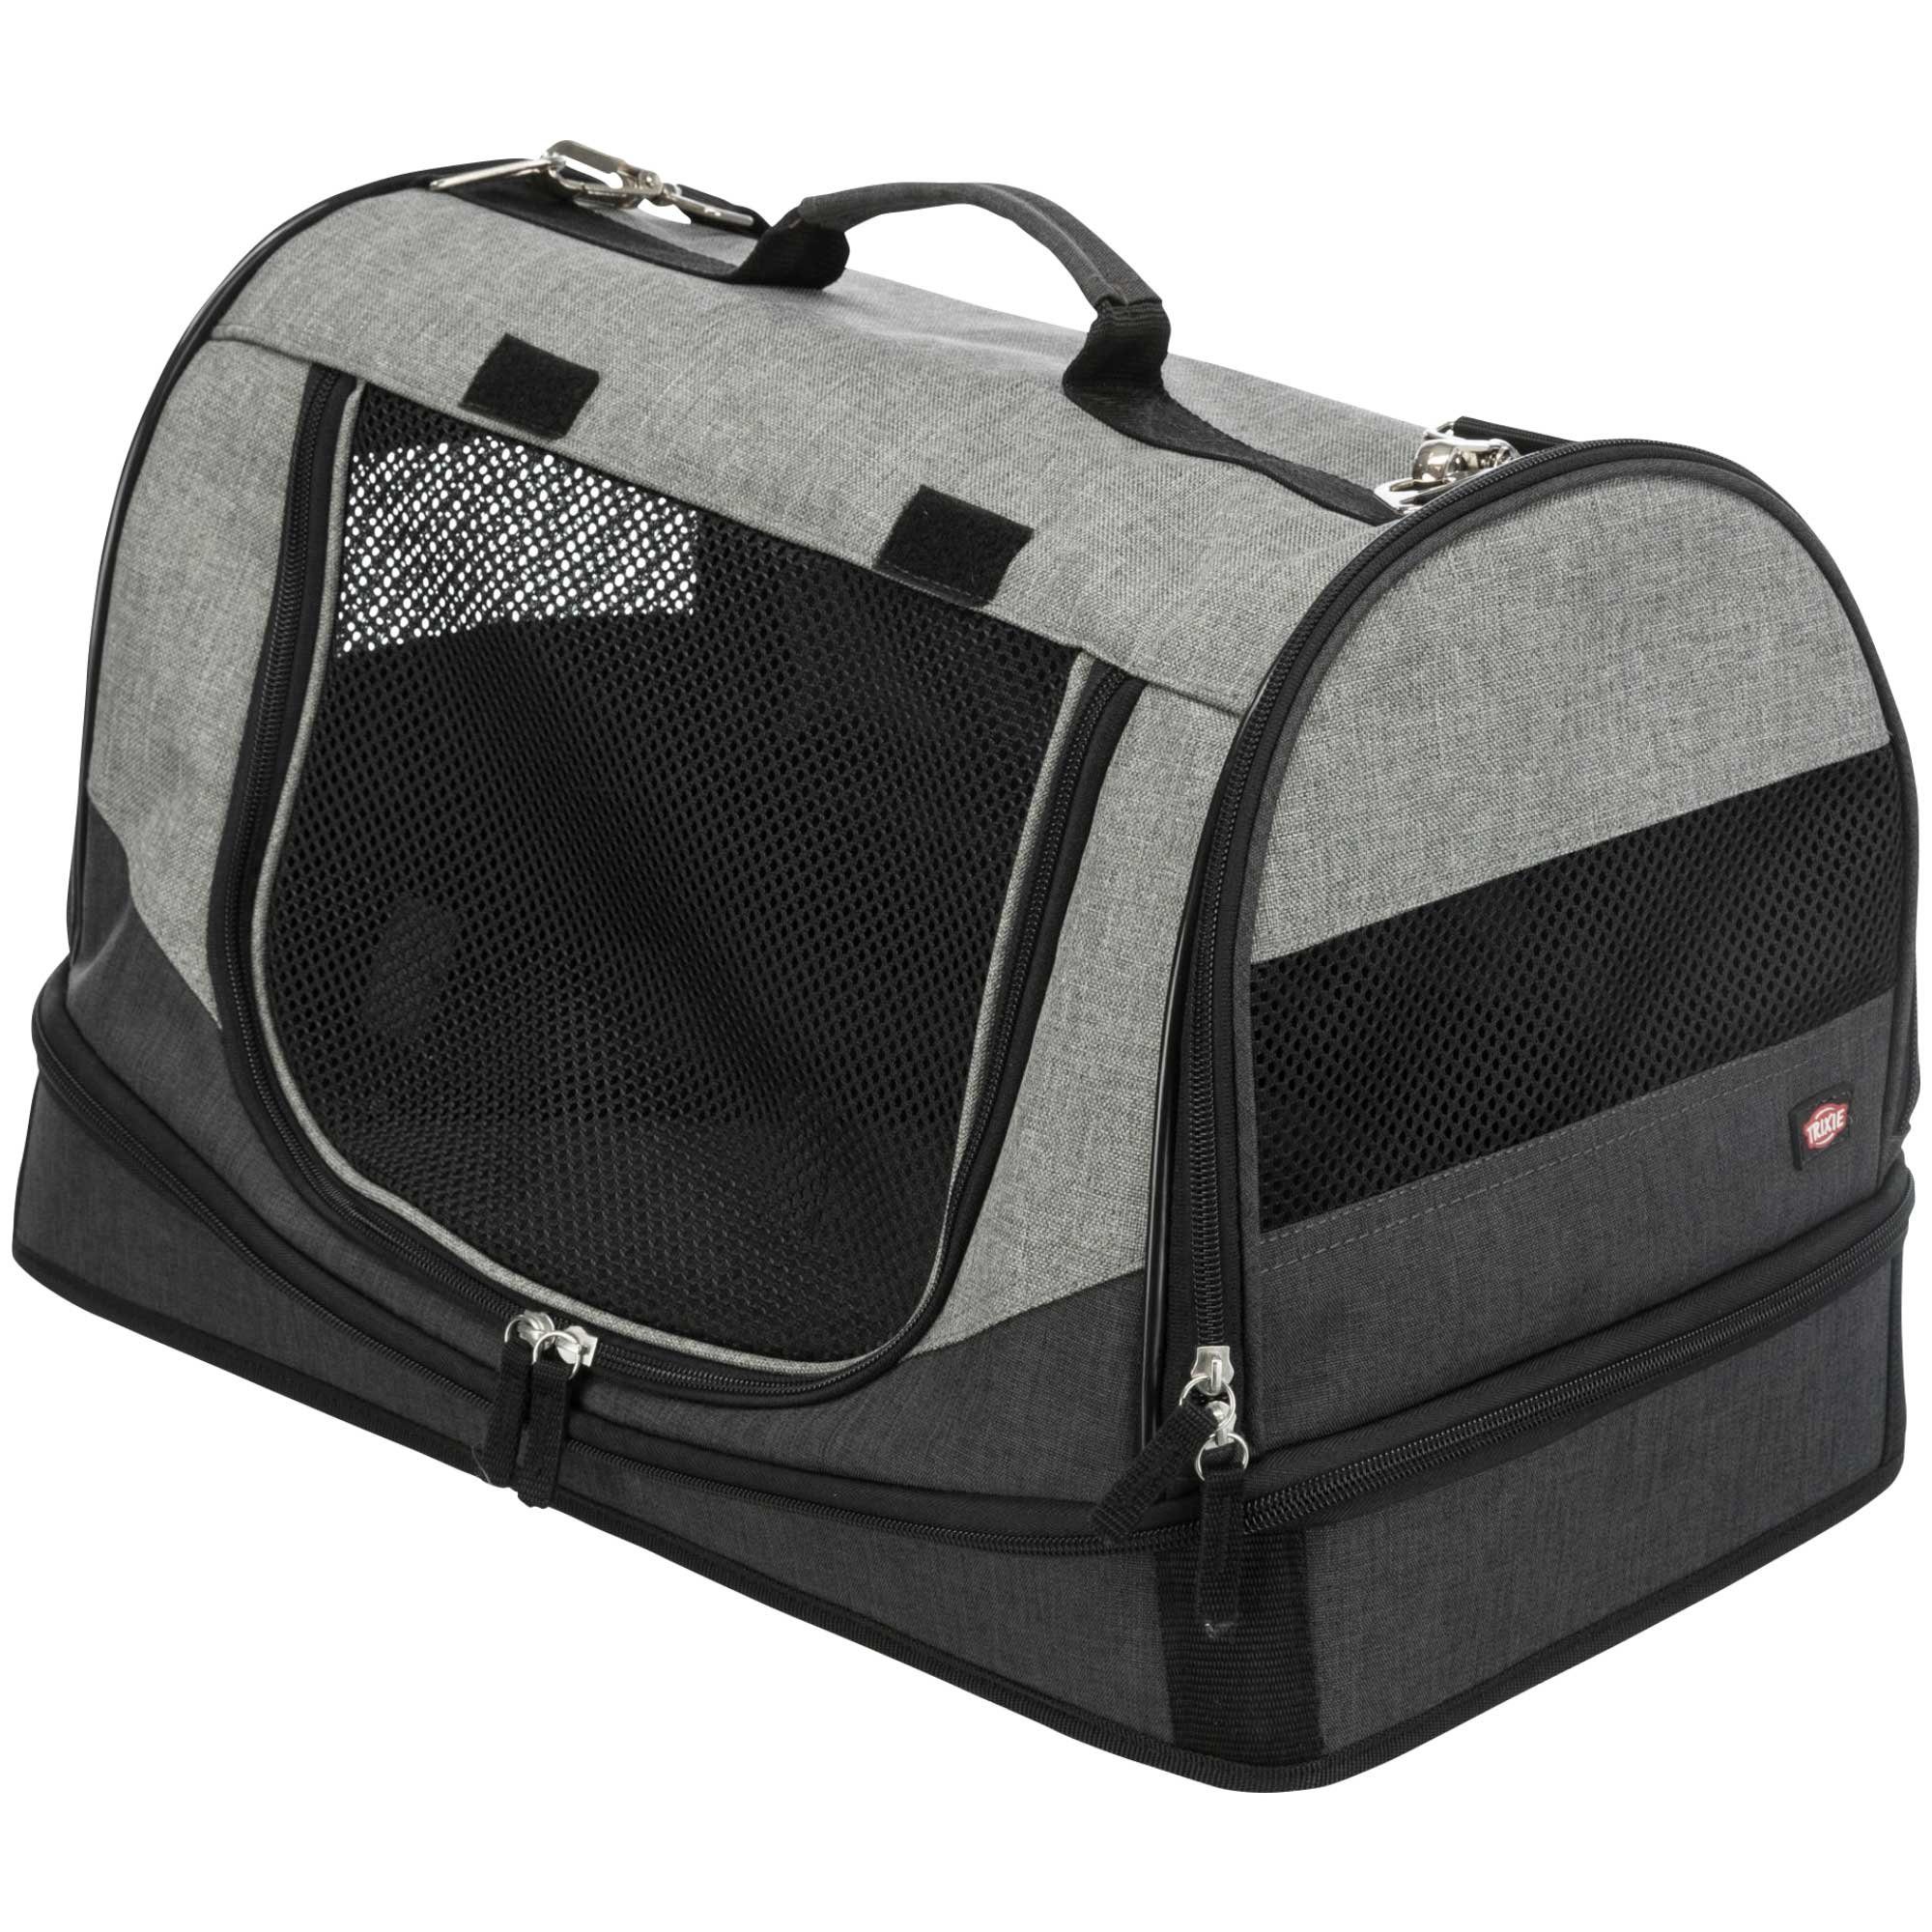 TRIXIE Tiertransporttasche Reisebett und Tasche bis 10,00 kg, 2 Funktionen